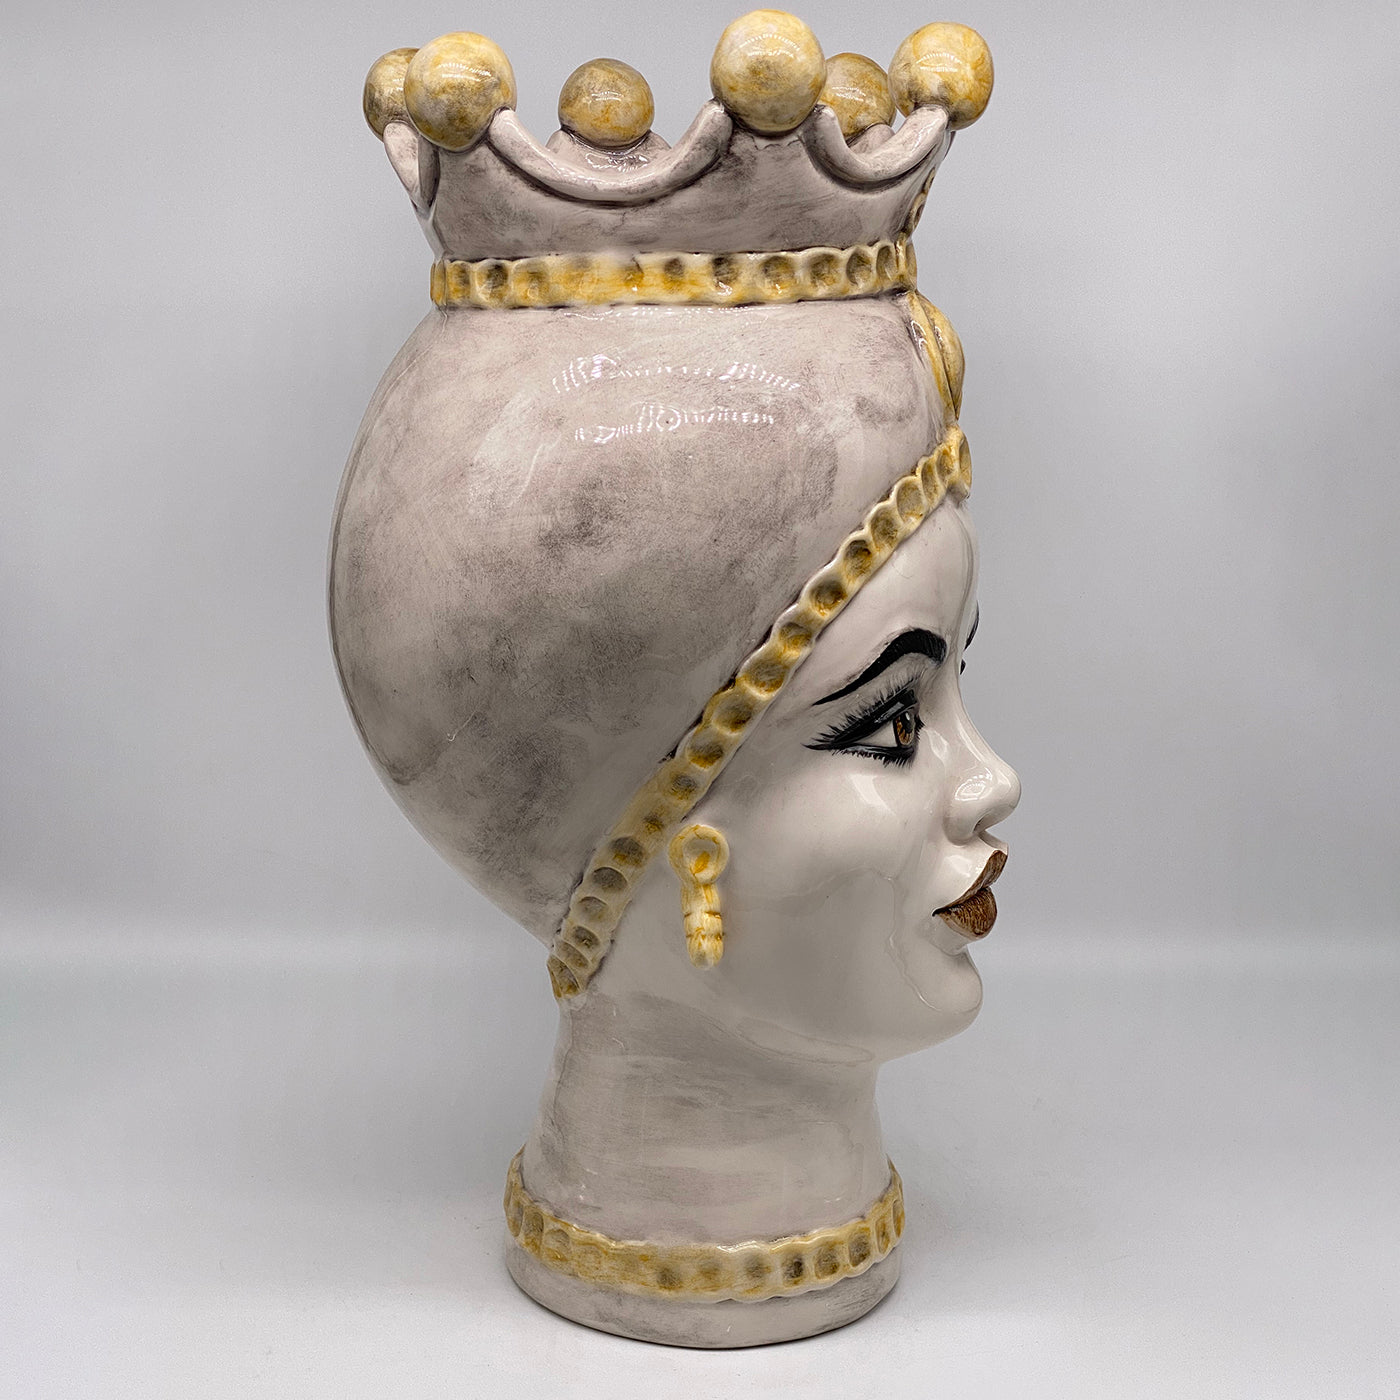 Luis Giant Lady Yellow Spheres Moor's Head Vase - Alternative view 1